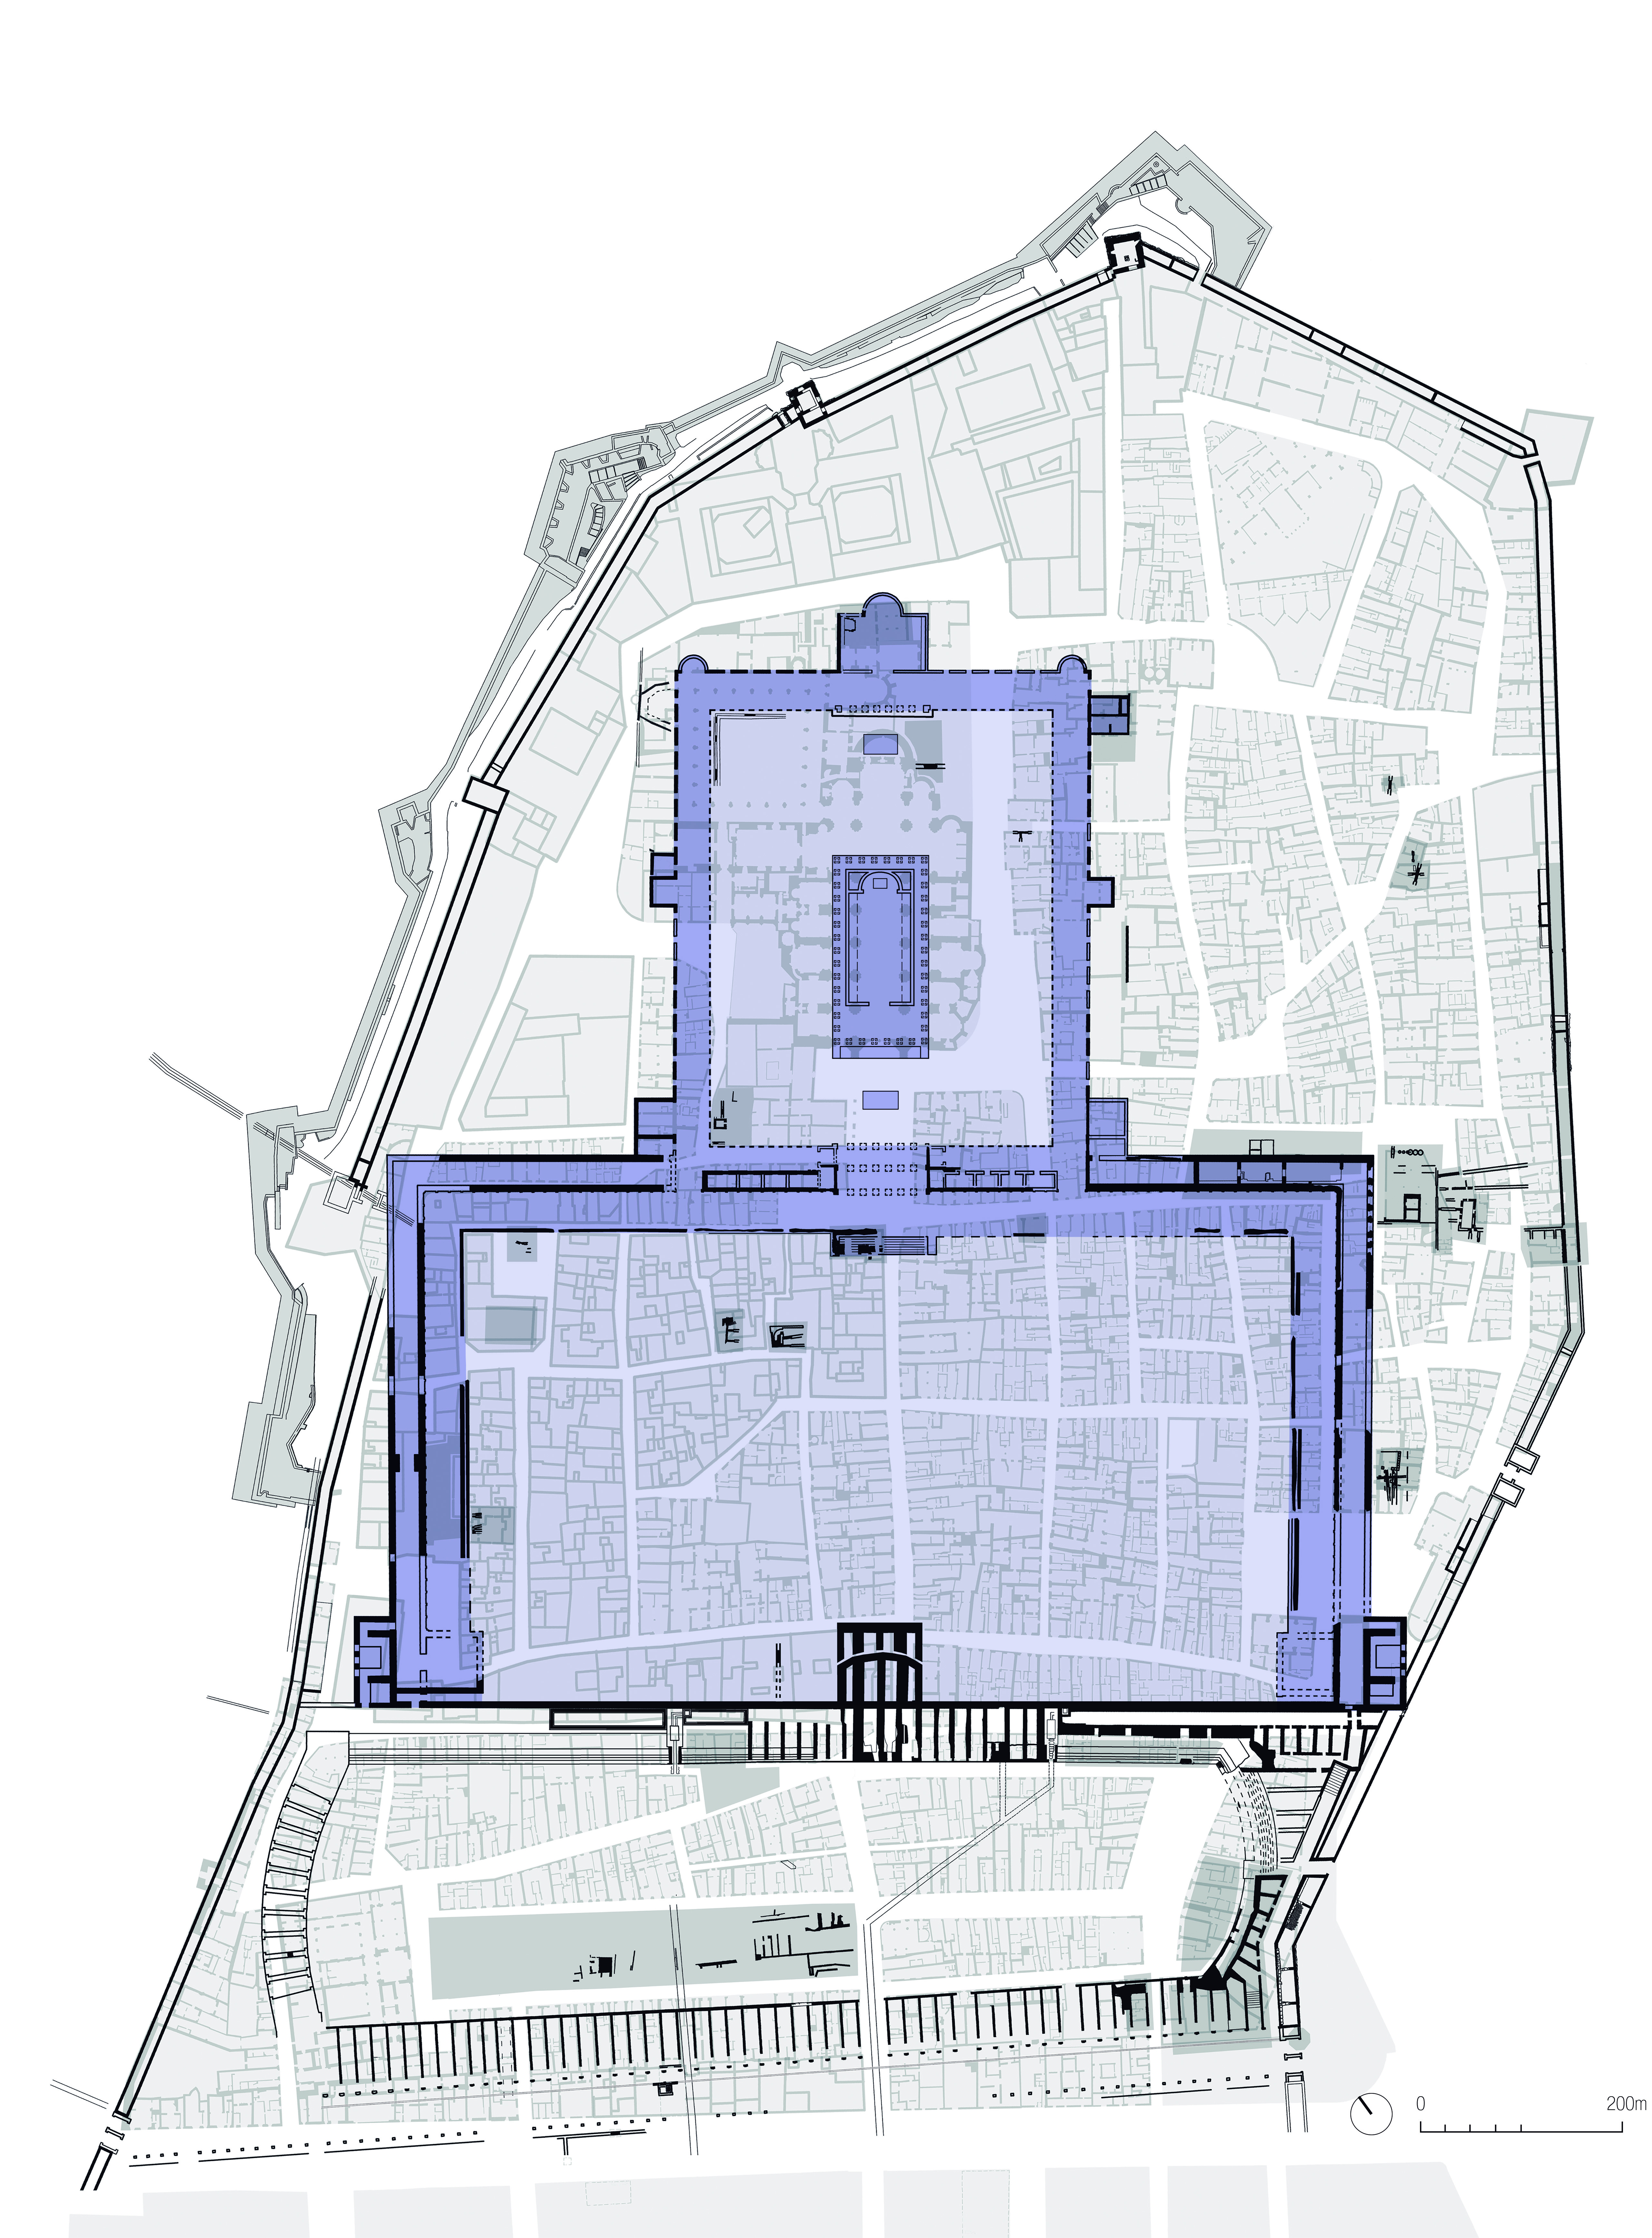 Plànol que indica, damunt de la Part Alta actual, l'espai que ocupava el temple d'August (primera terrassa) i la Plaça de Representació (segona terrasa). A sota es pot veure també el circ (Institut Cartrogràfic de Catalunya).